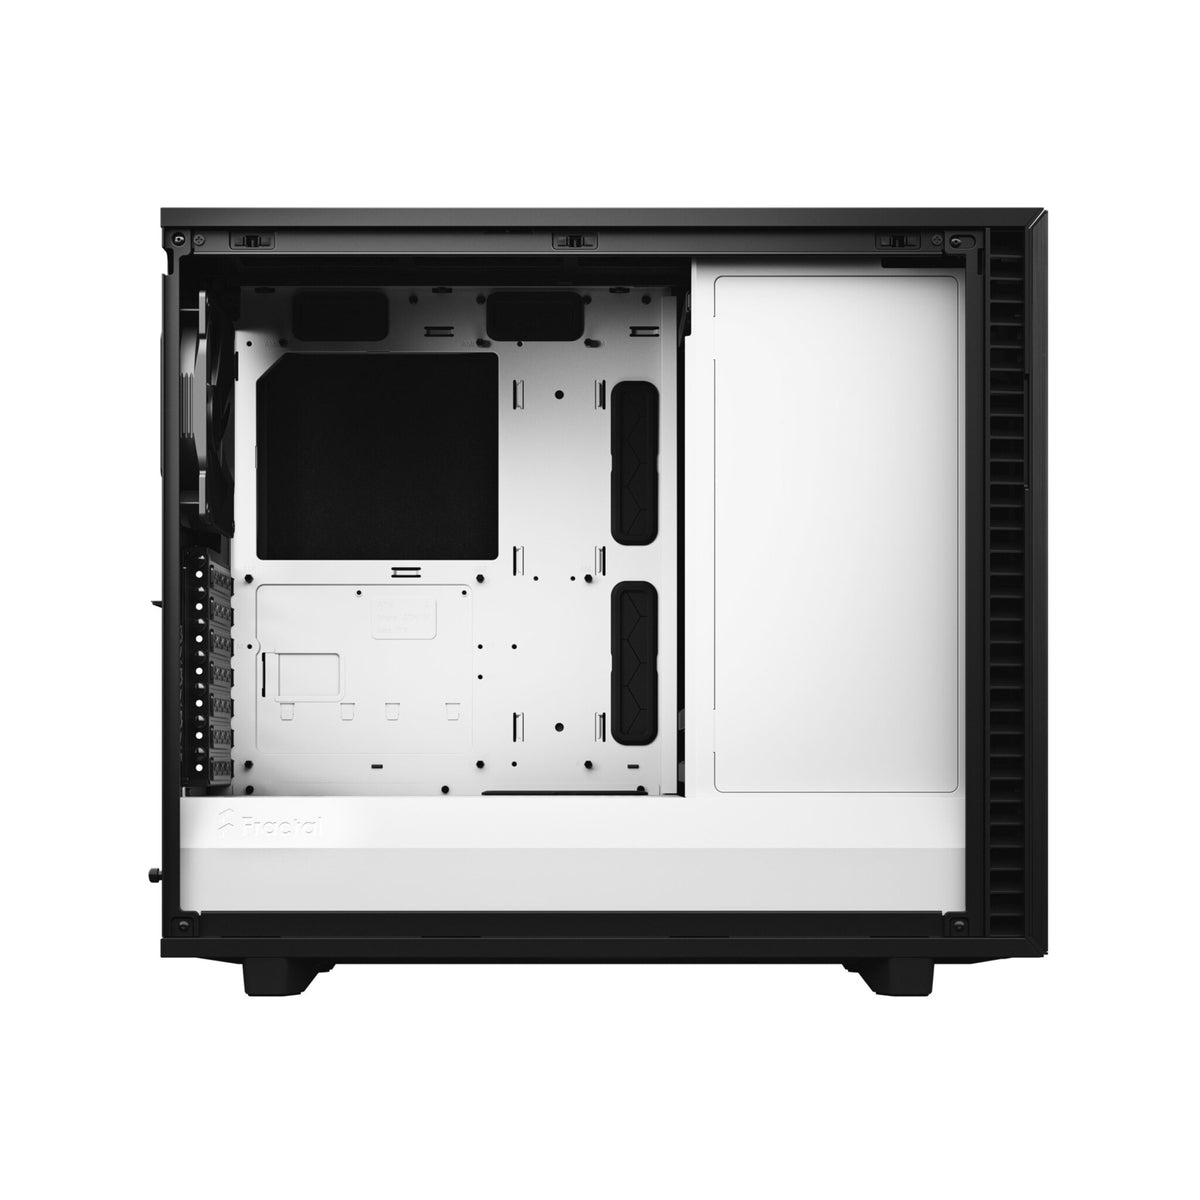 Fractal Design Define 7 - ATX Mid Tower Case in Black / White